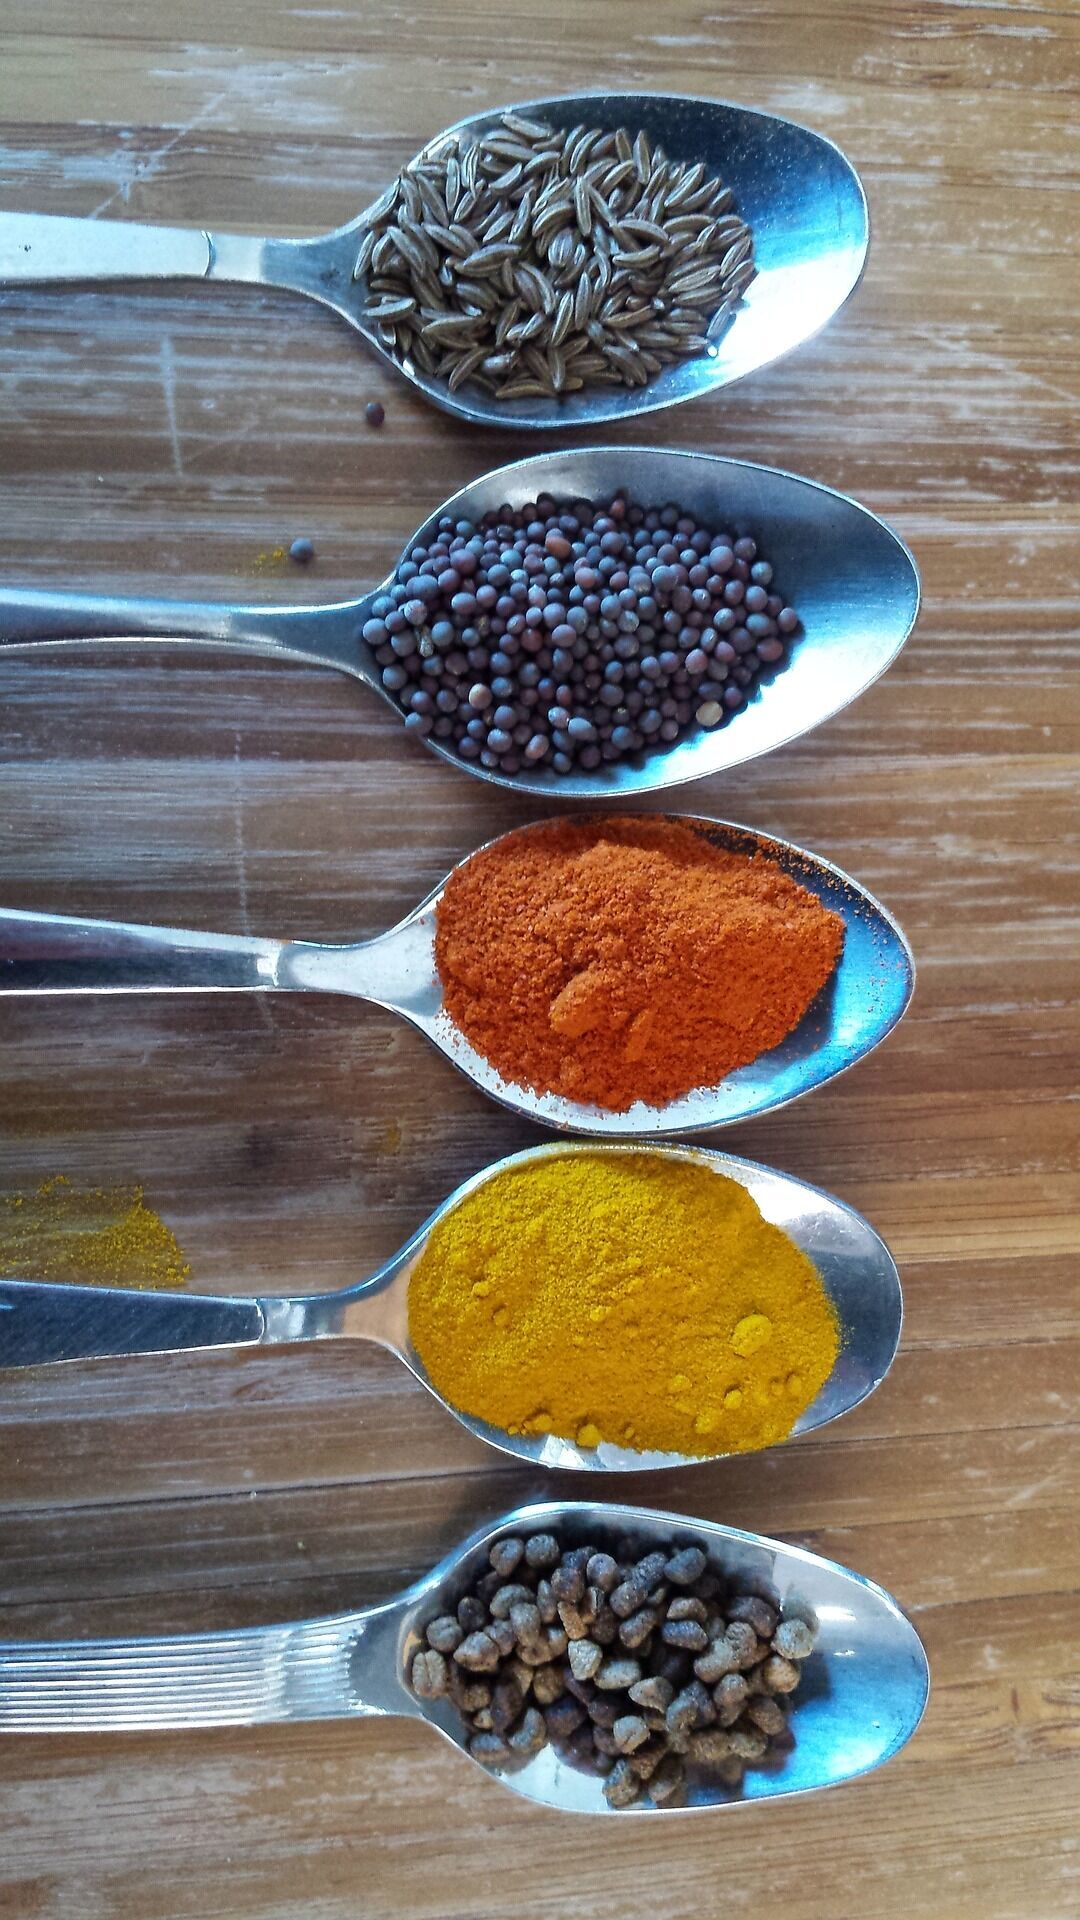 За что мы любим индийскую кухню: 4 супер специи для блюд и для лечения болезней